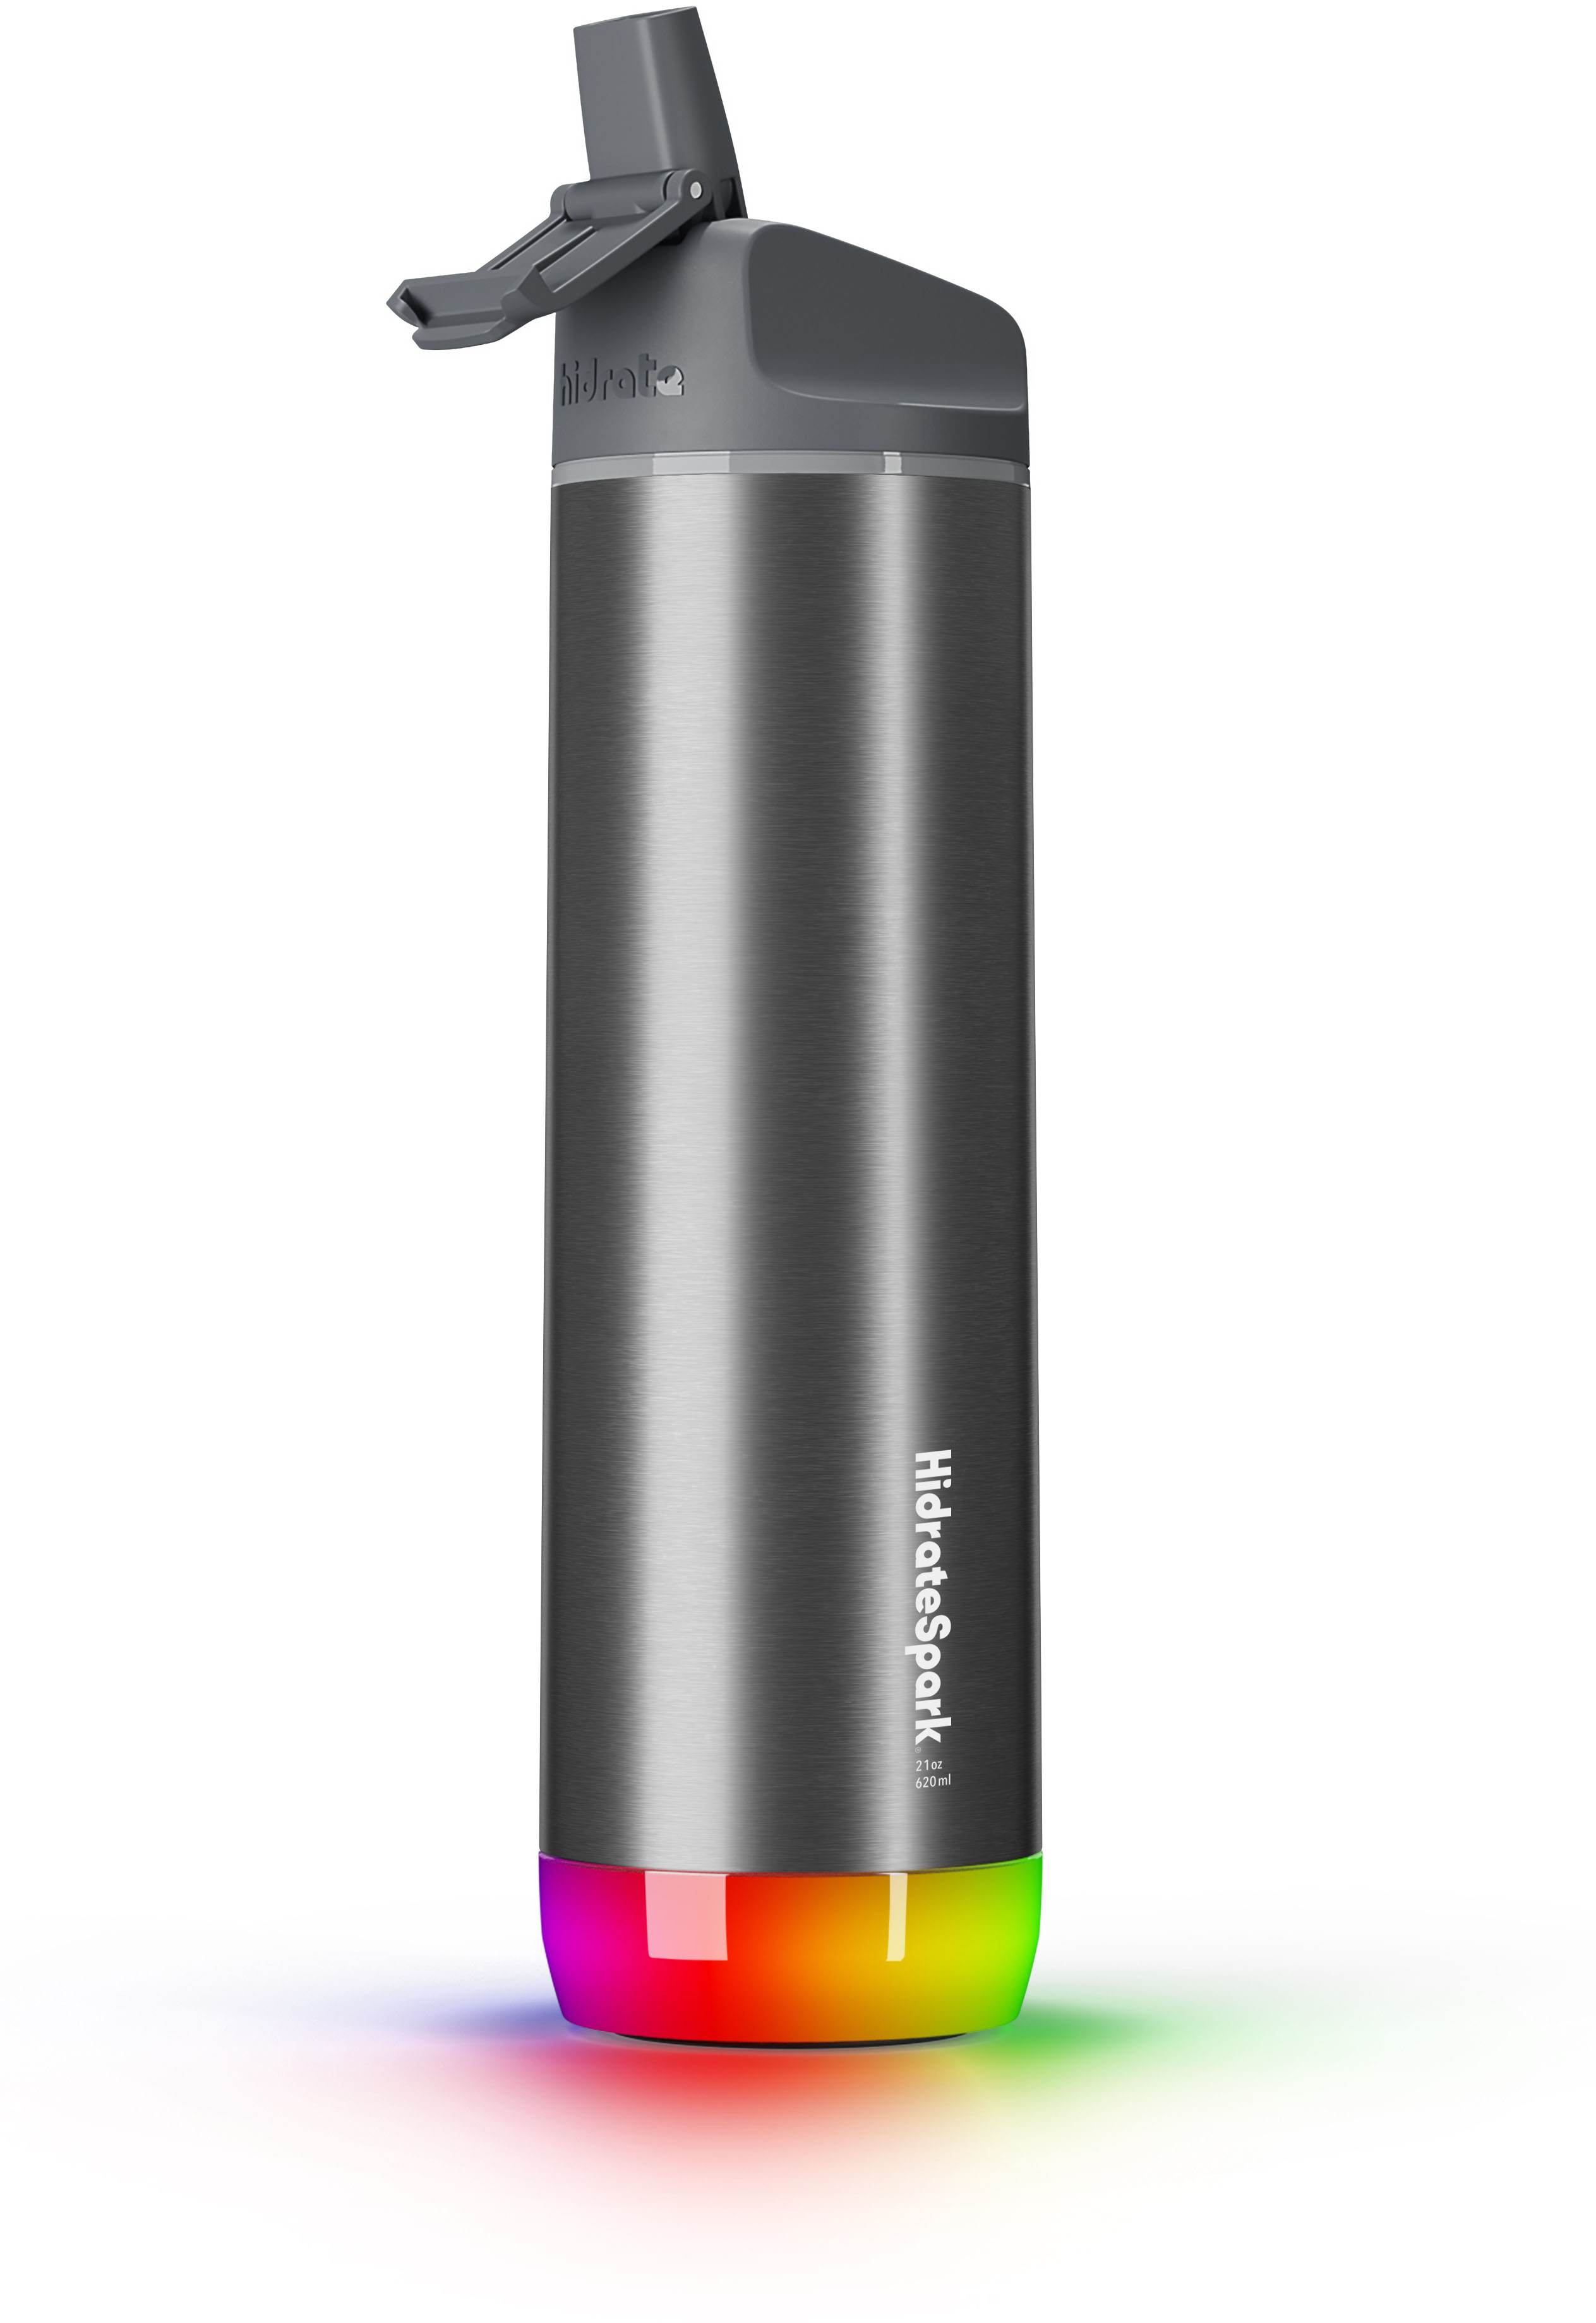 HidrateSpark PRO STEEL - 32 oz. Smart Water Bottle + Bonus Straw